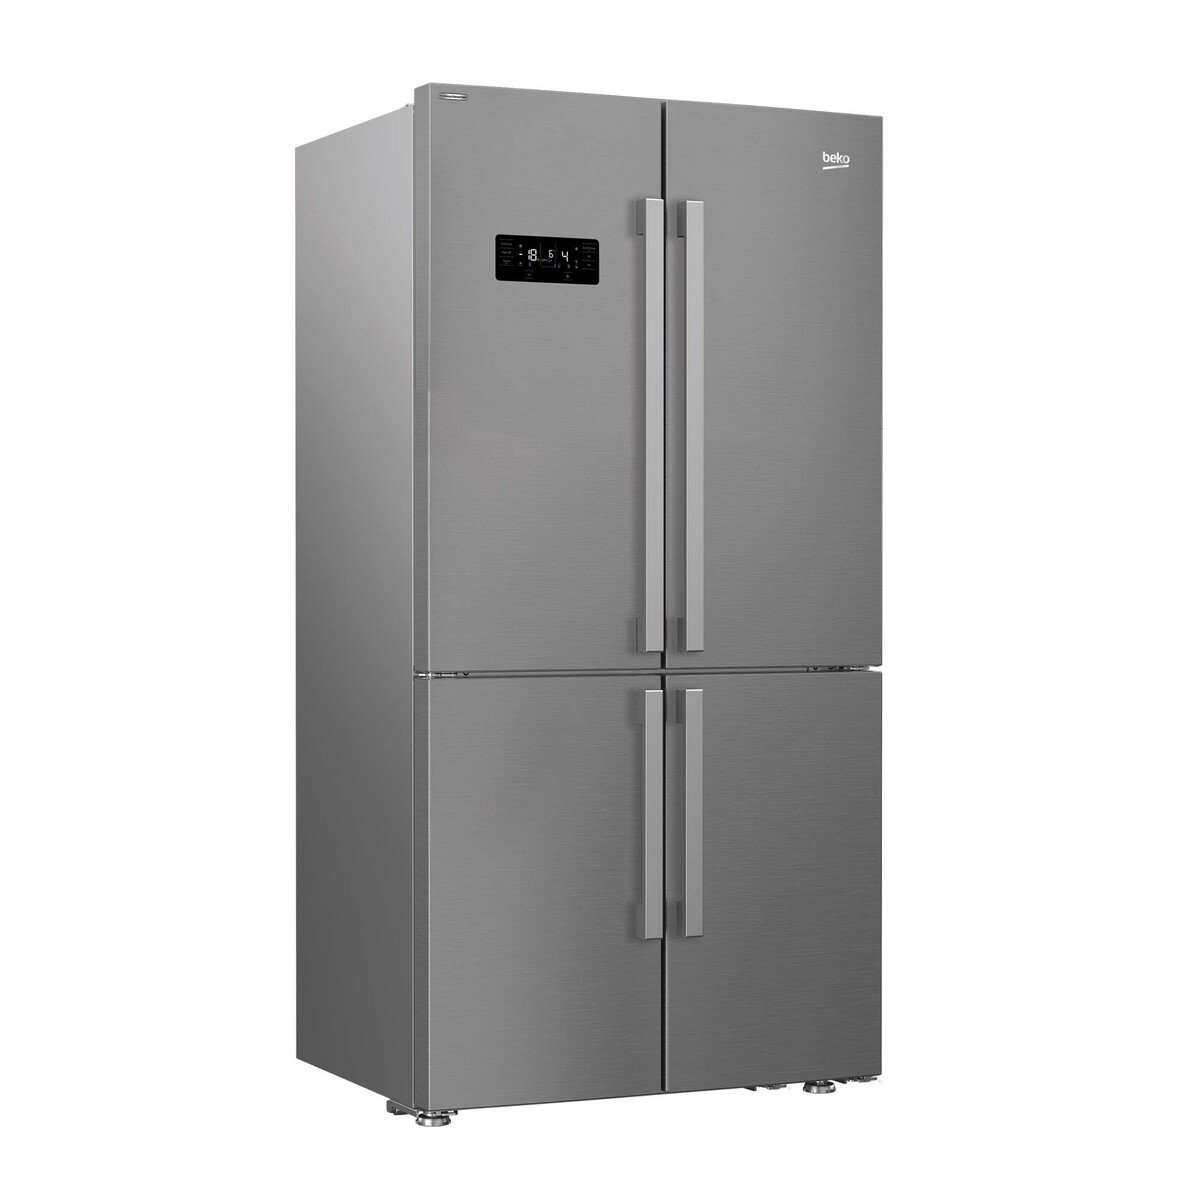 Beko French Door Refrigerator GN1416221ZX 626LTR